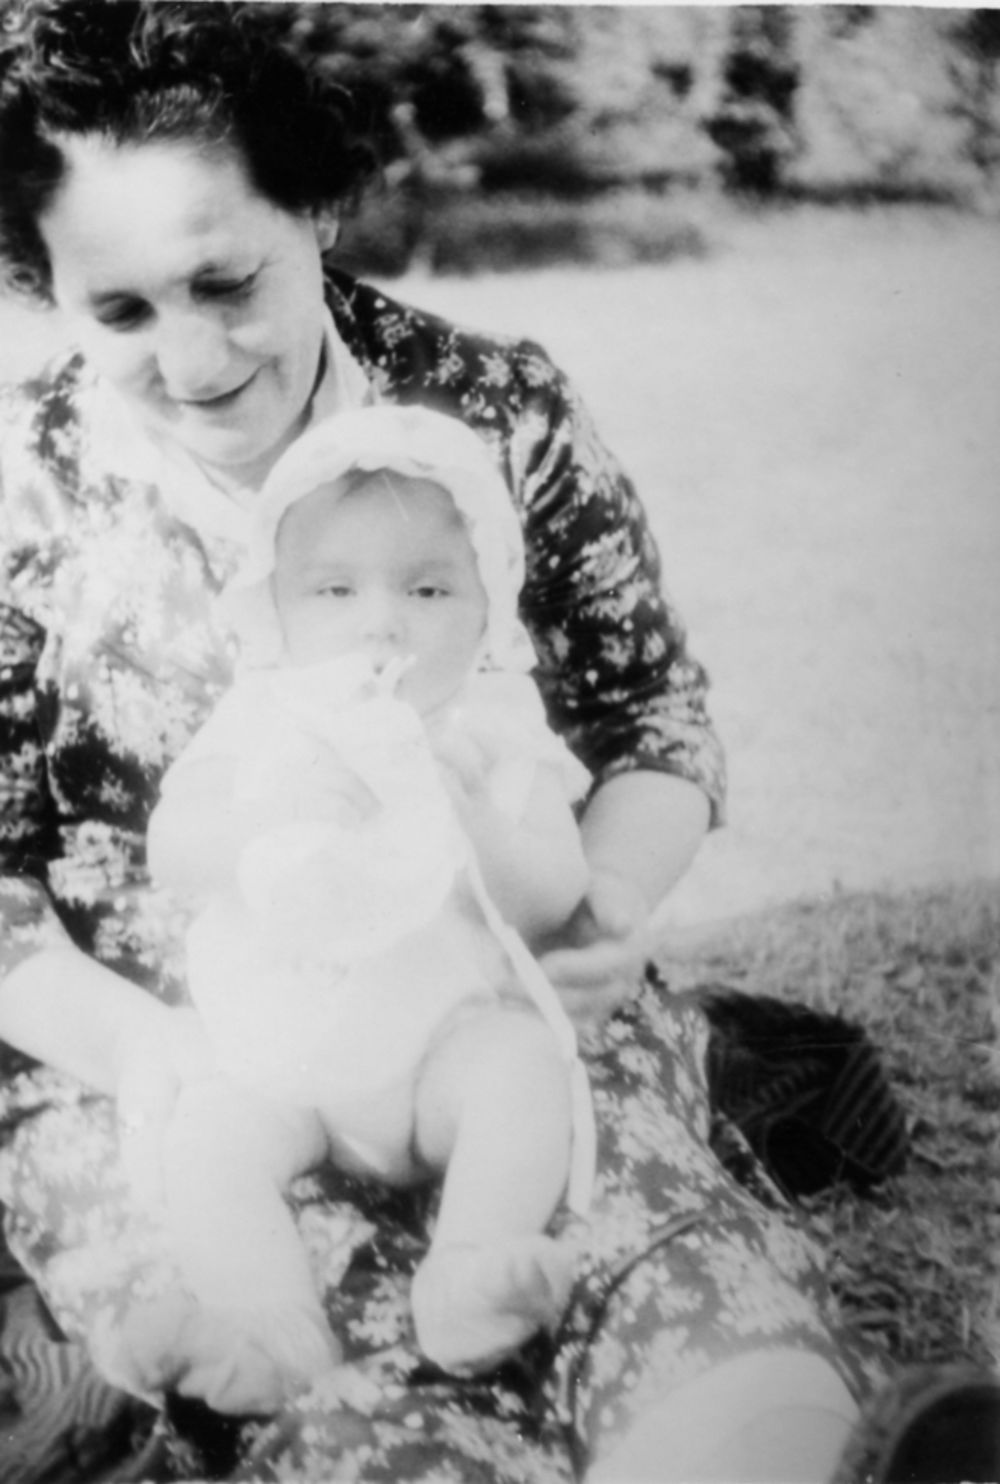 Anabela Đogani kao beba u naručju svoje bake